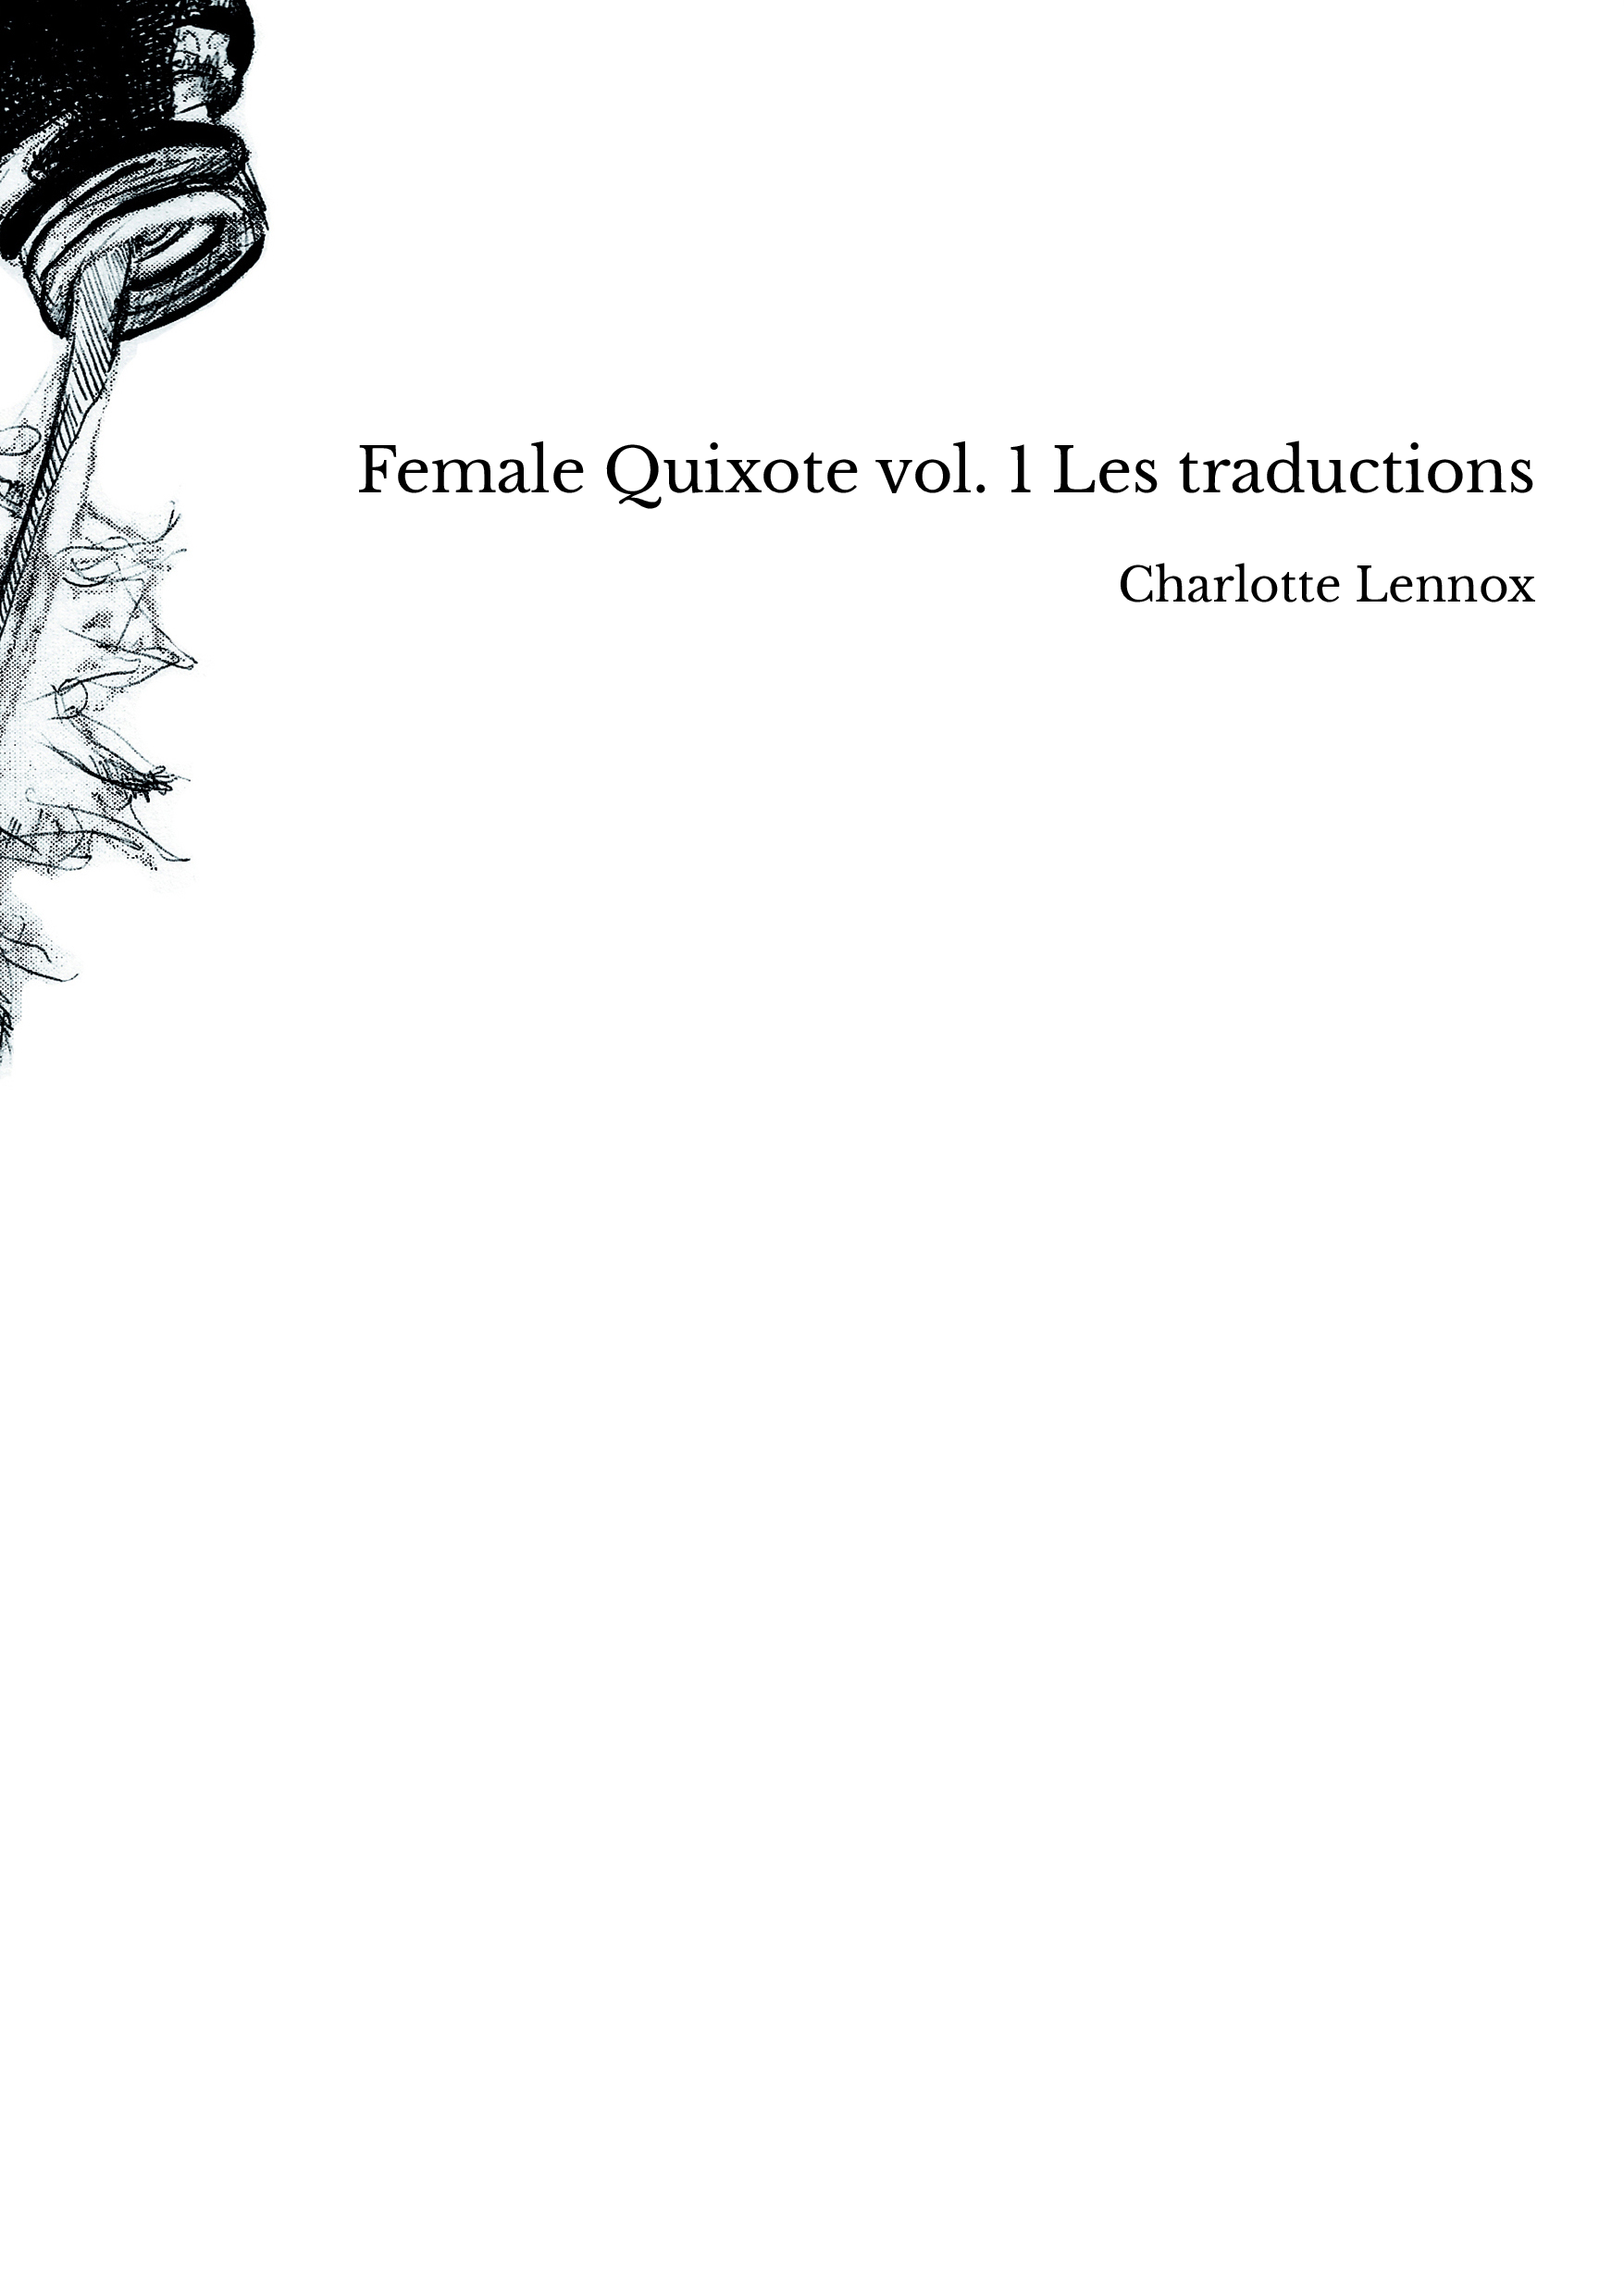 Female Quixote vol. 1 Les traductions